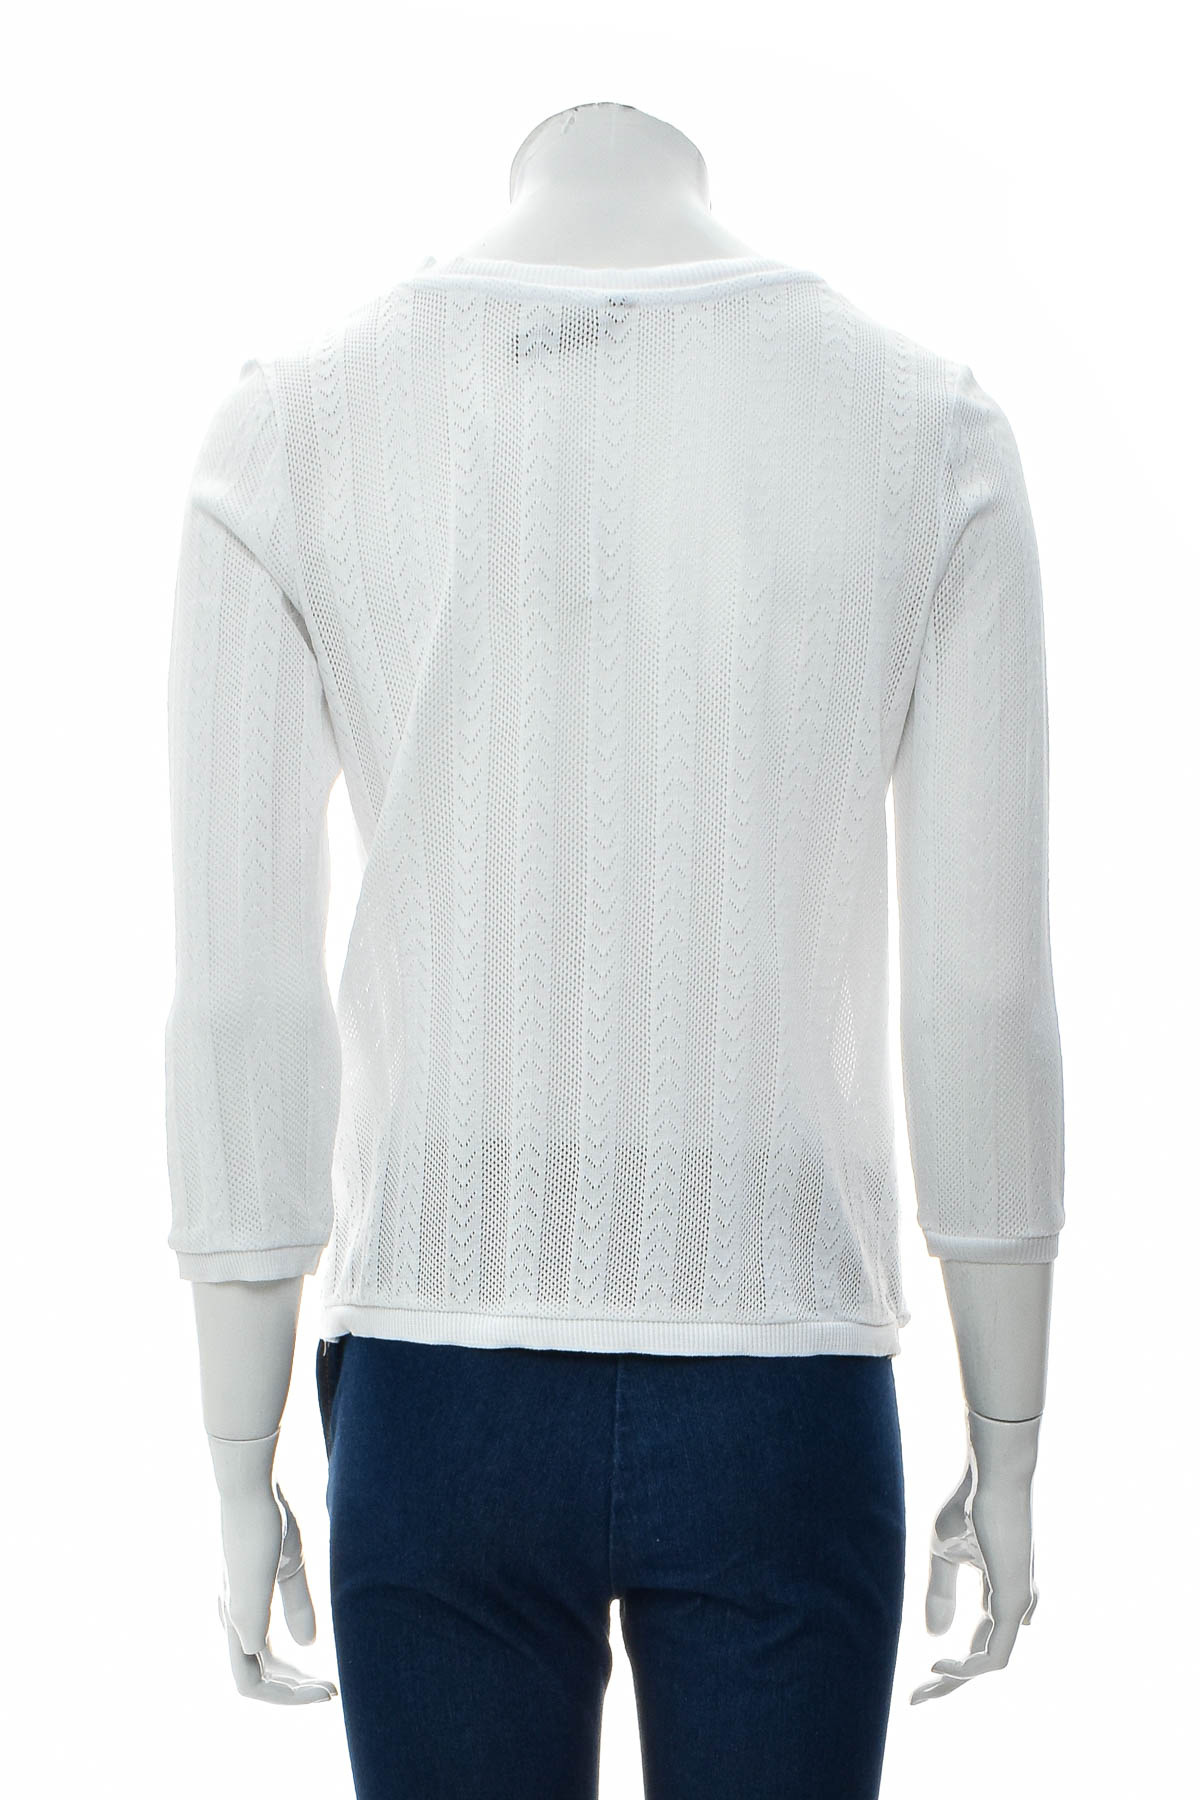 Women's sweater - Jean Pascale - 1